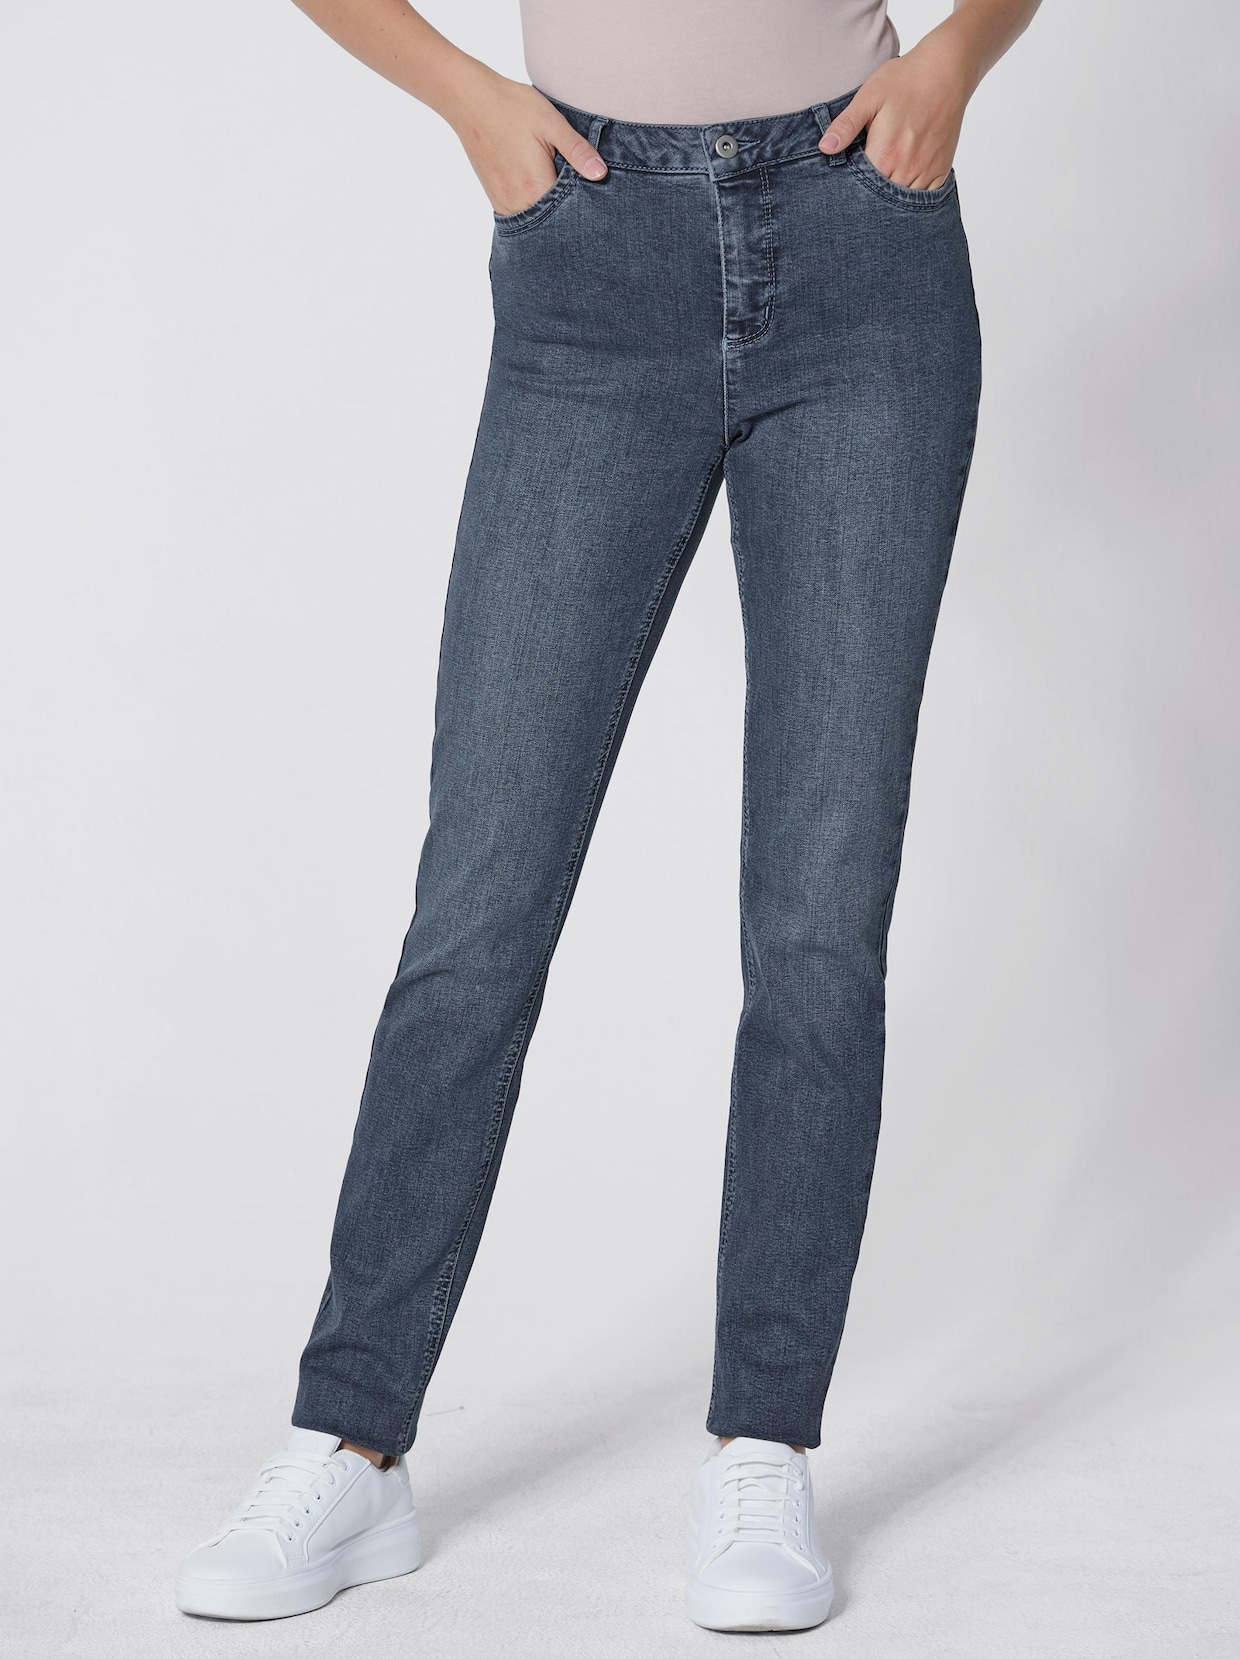 Creation L Premium Chique jeans - blue-stonewashed